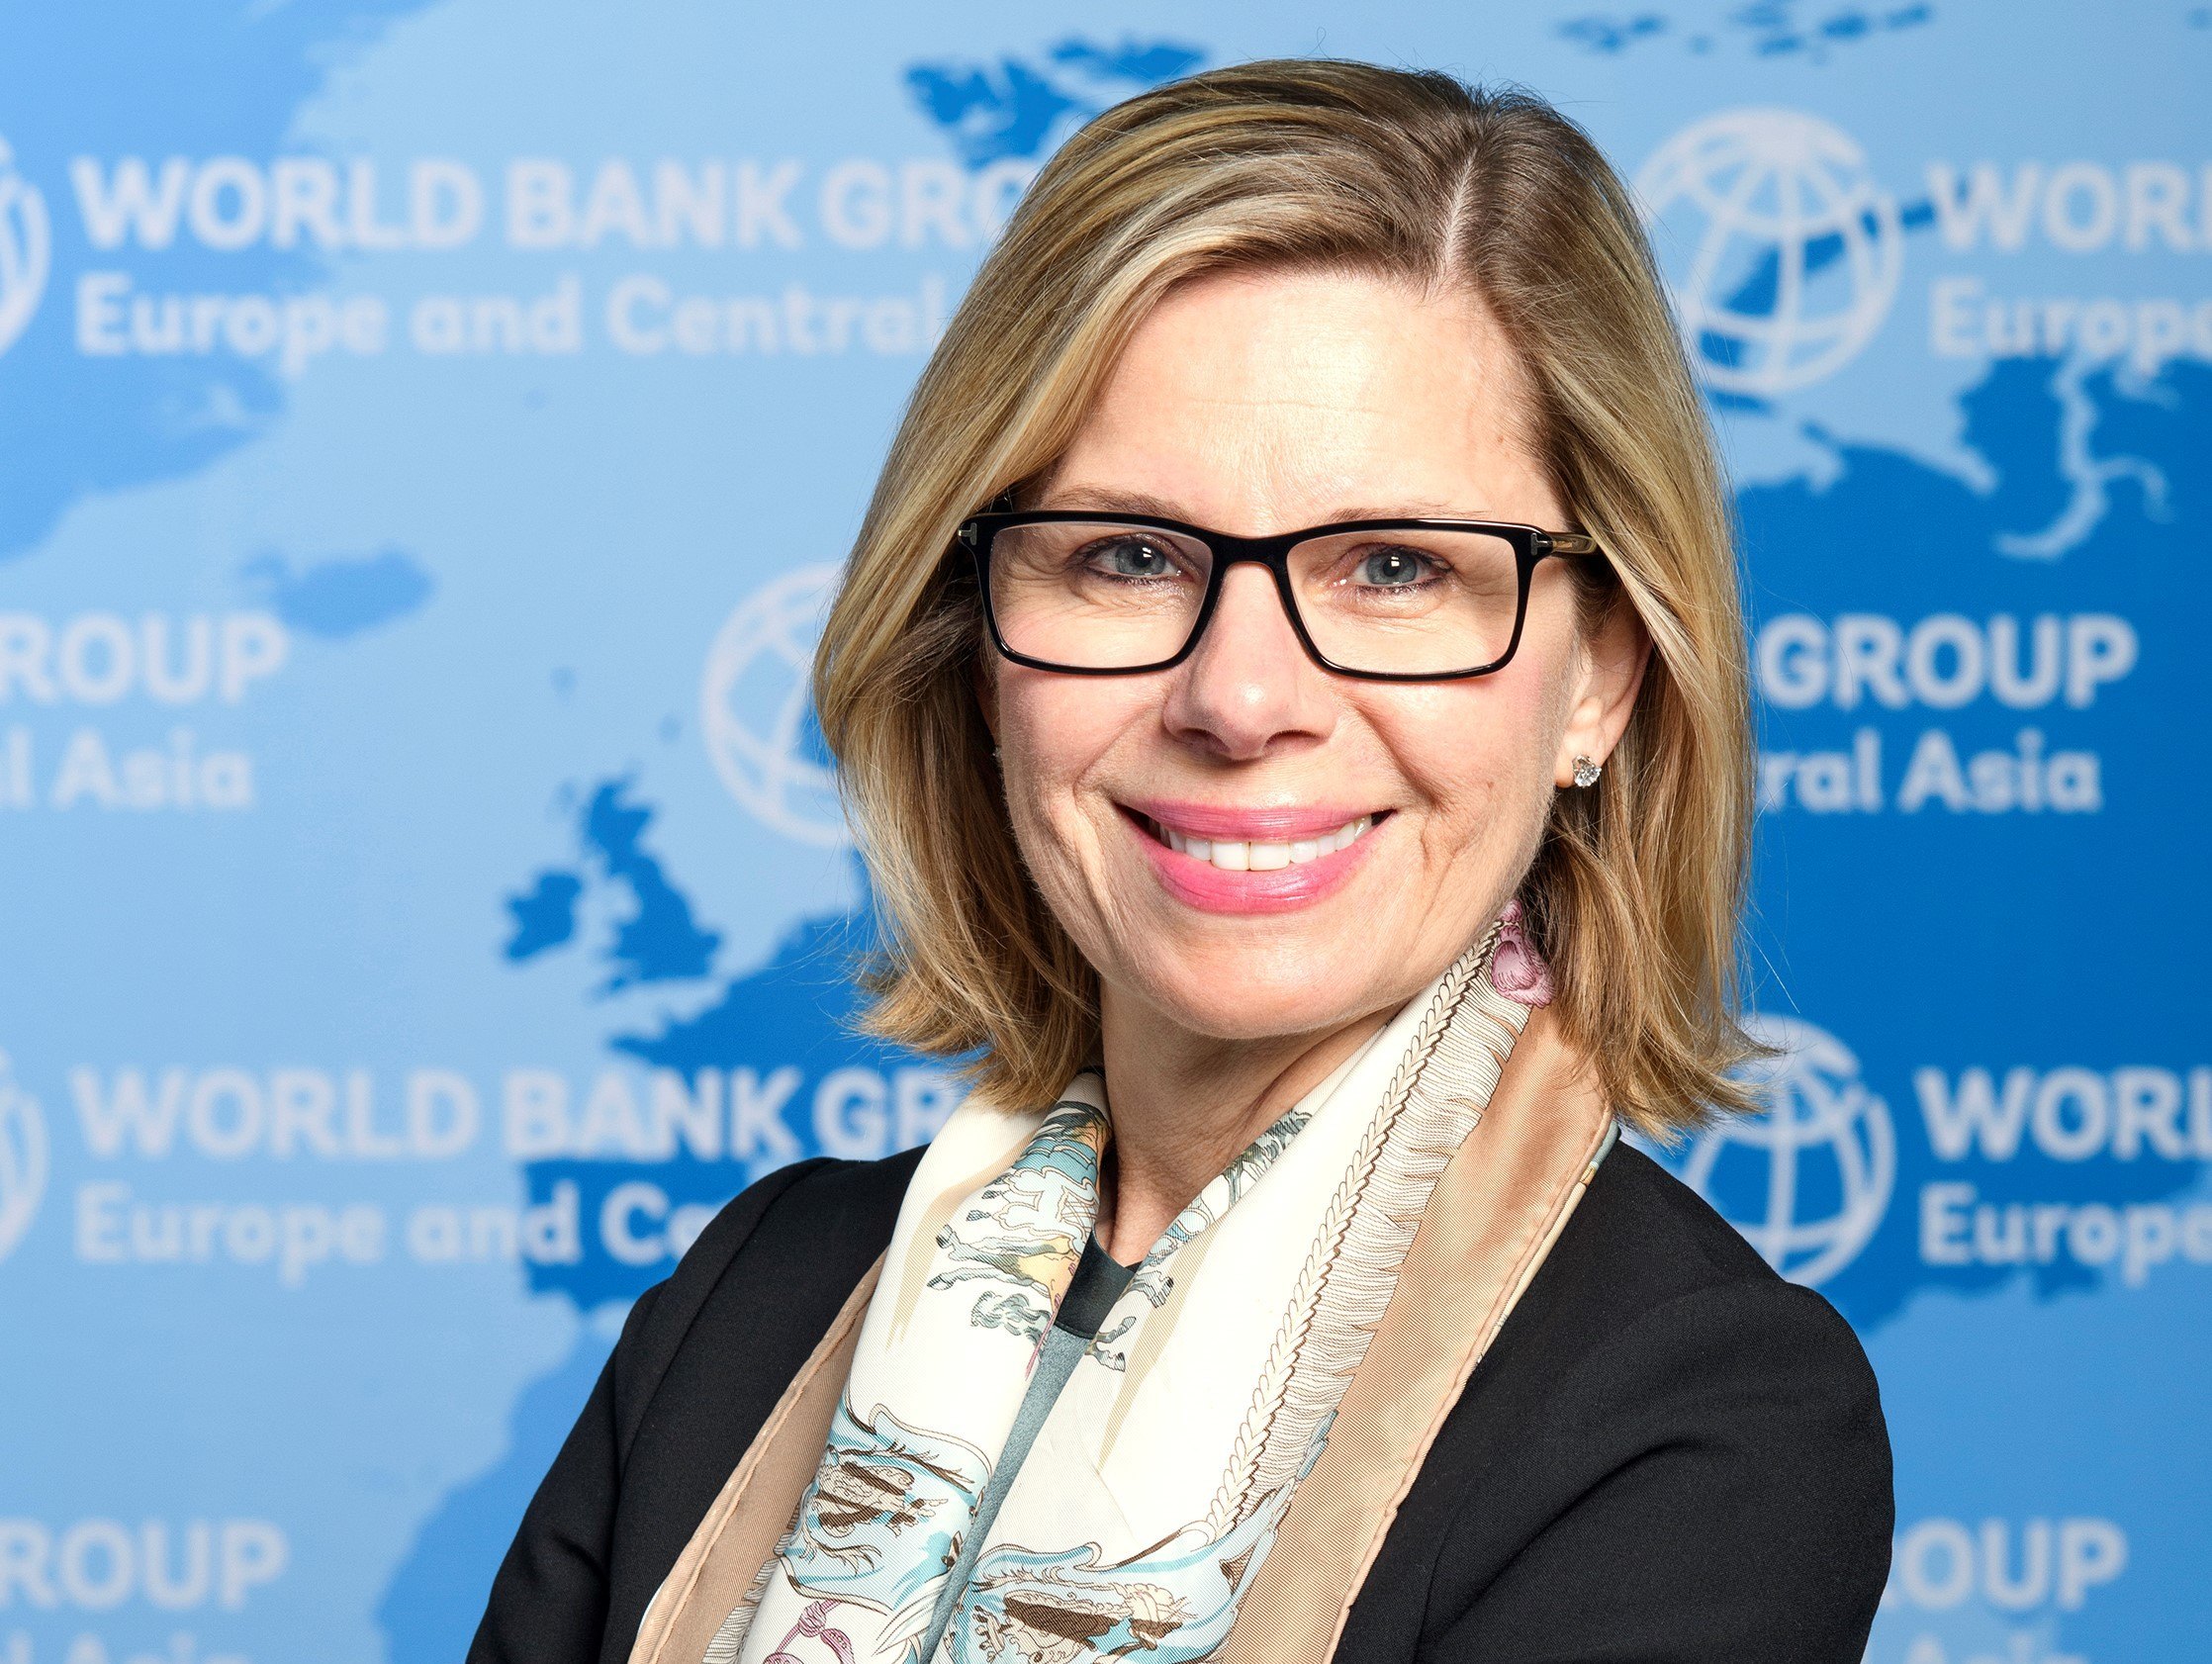 Dünya Bankının yeni regional vitse-prezidenti təyin edildi